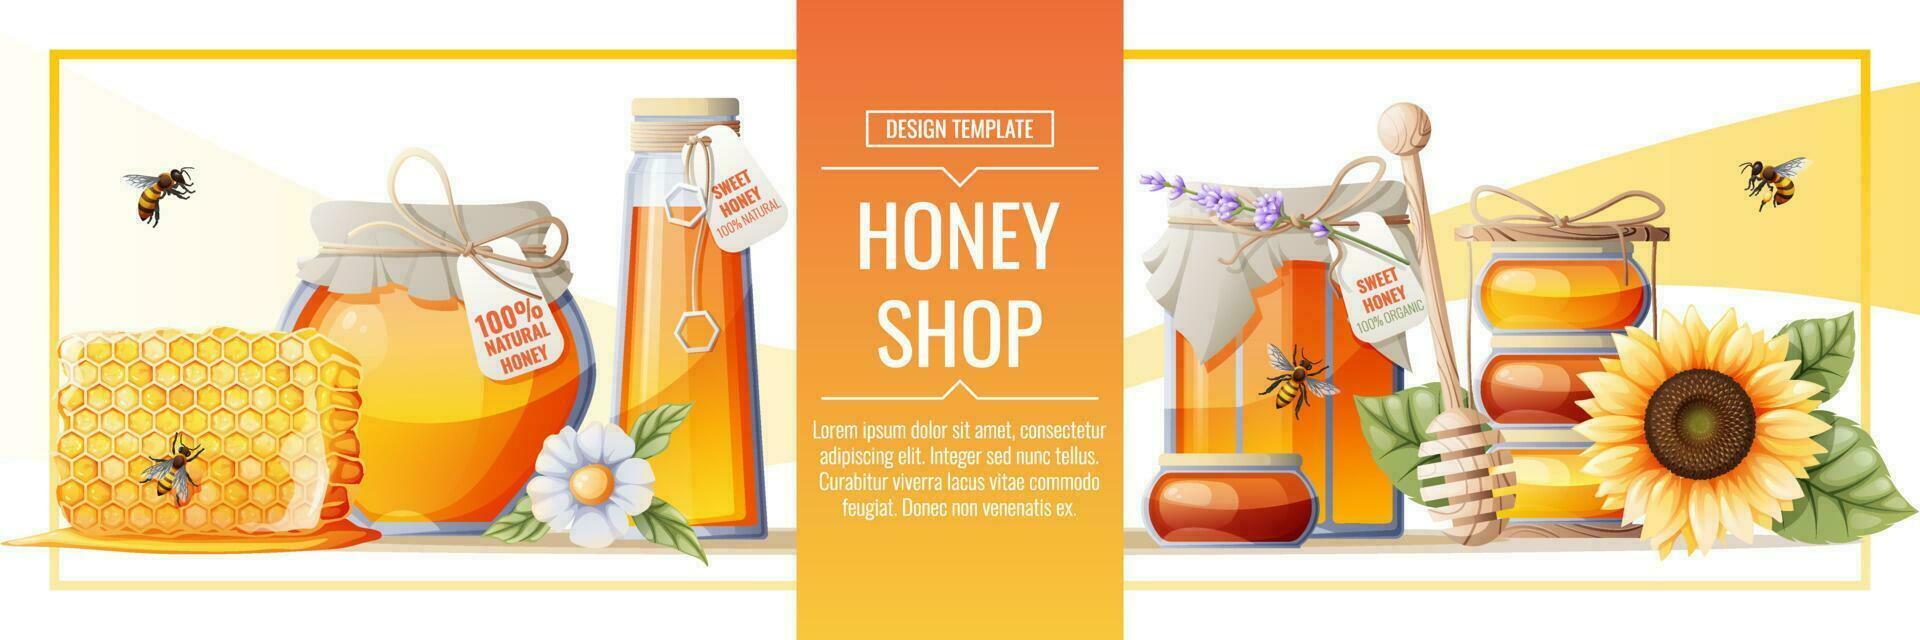 banier sjabloon met honing producten. honing winkel.illustratie van een pot van honing, honingraten, bijen, bloemen. ontwerp voor label, folder, poster, reclame. vector